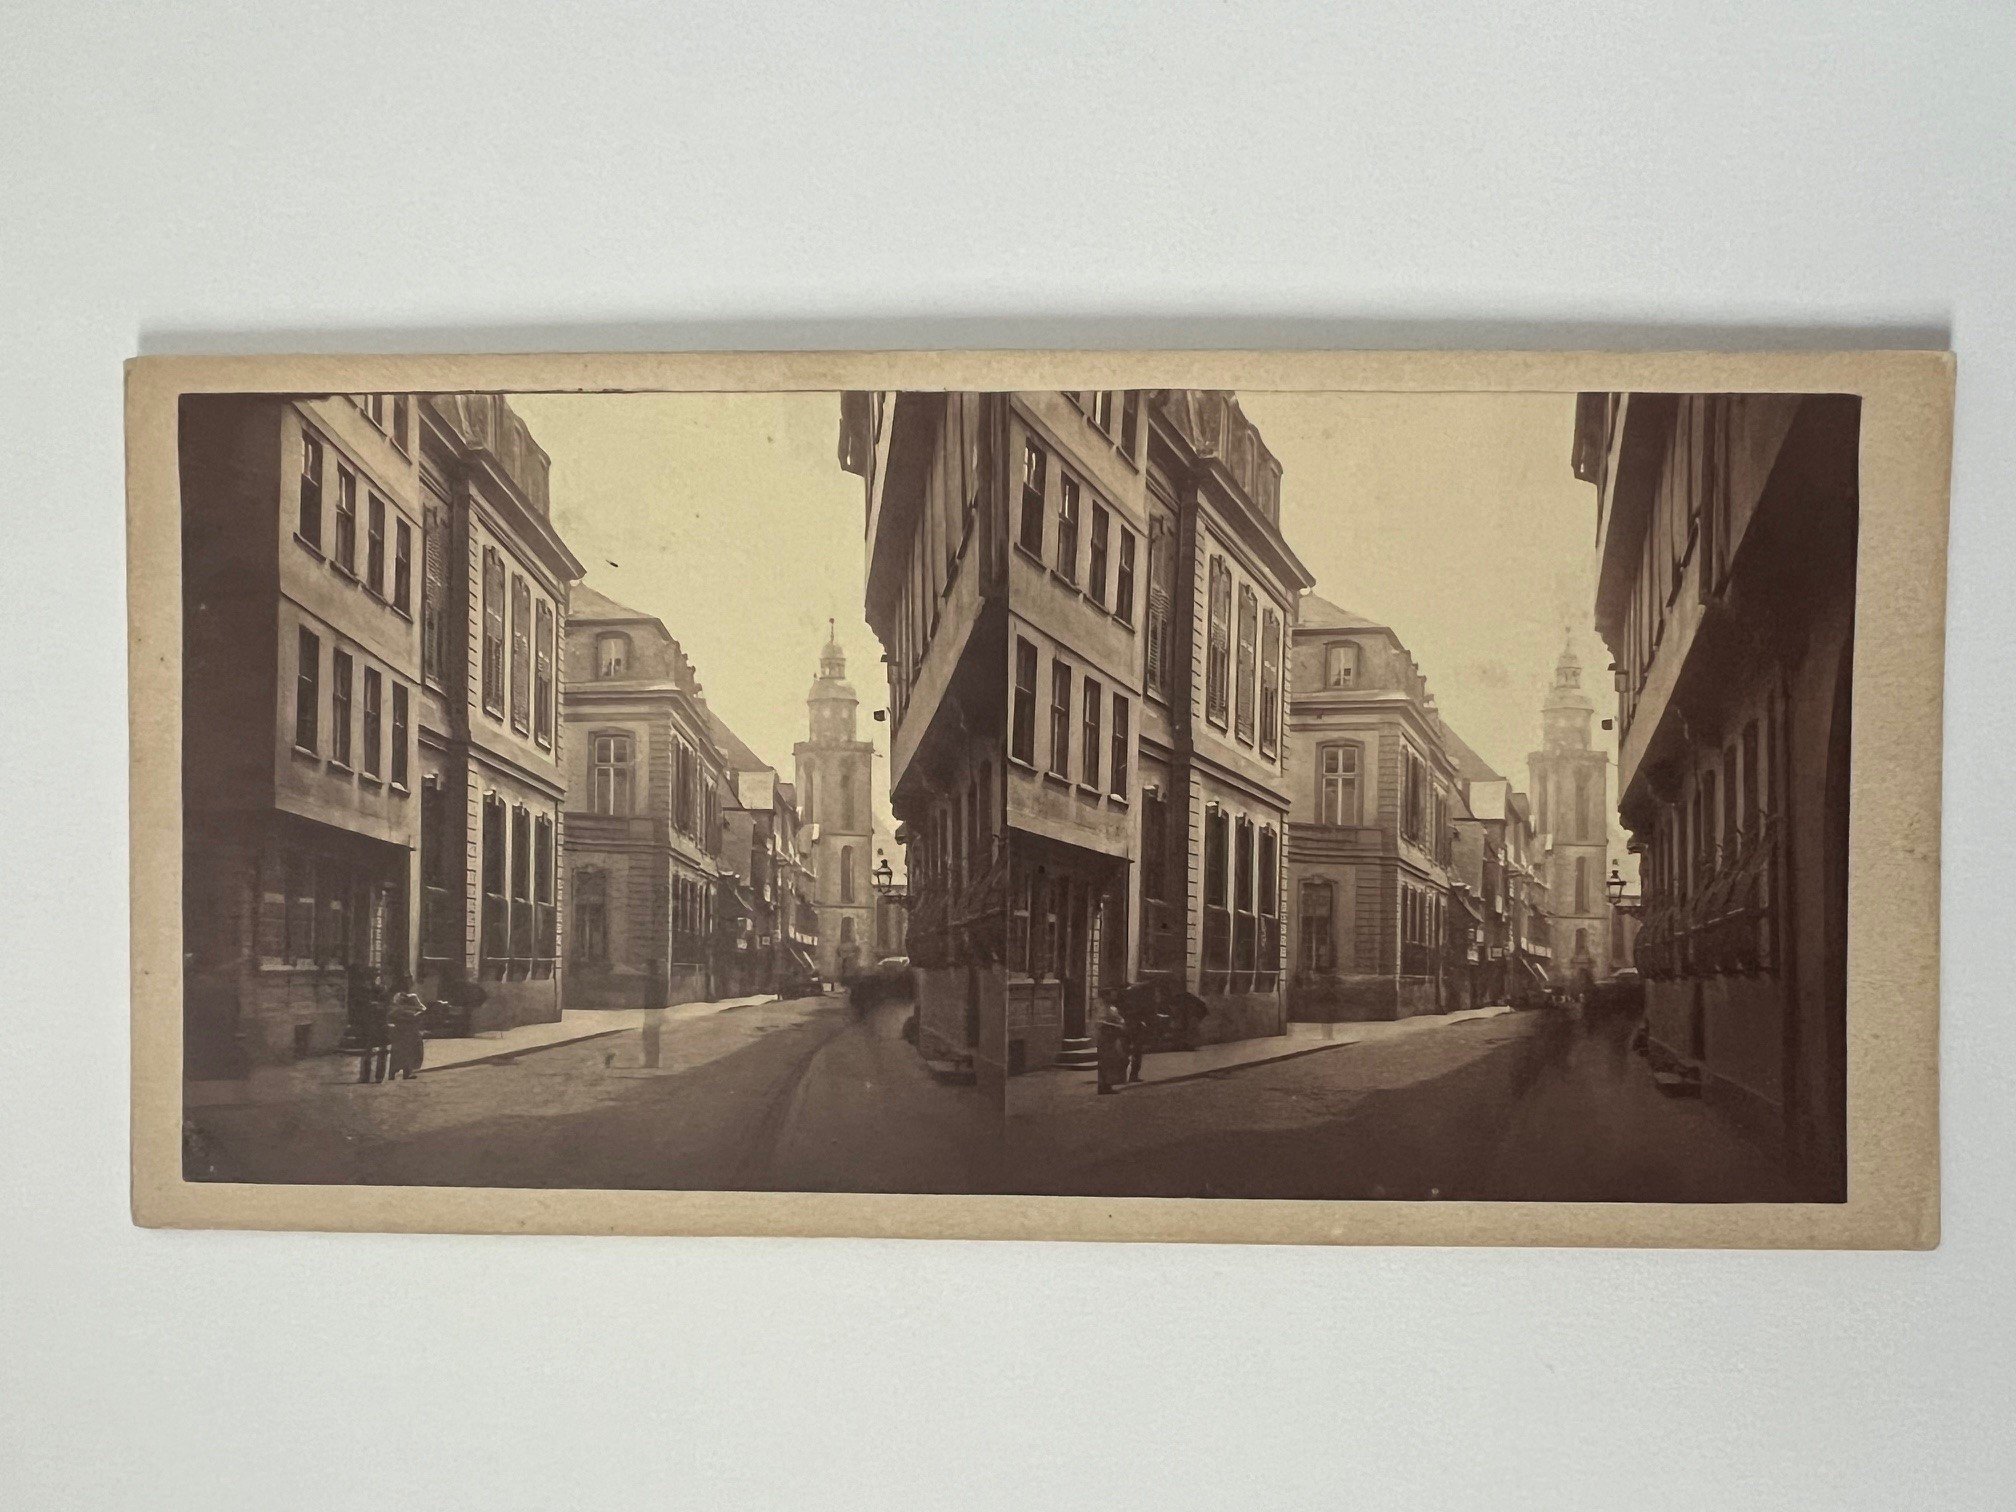 Stereobild, Unbekannter Fotograf, Frankfurt, Grosse Eschenheimer Strasse, ca. 1868. (Taunus-Rhein-Main - Regionalgeschichtliche Sammlung Dr. Stefan Naas CC BY-NC-SA)